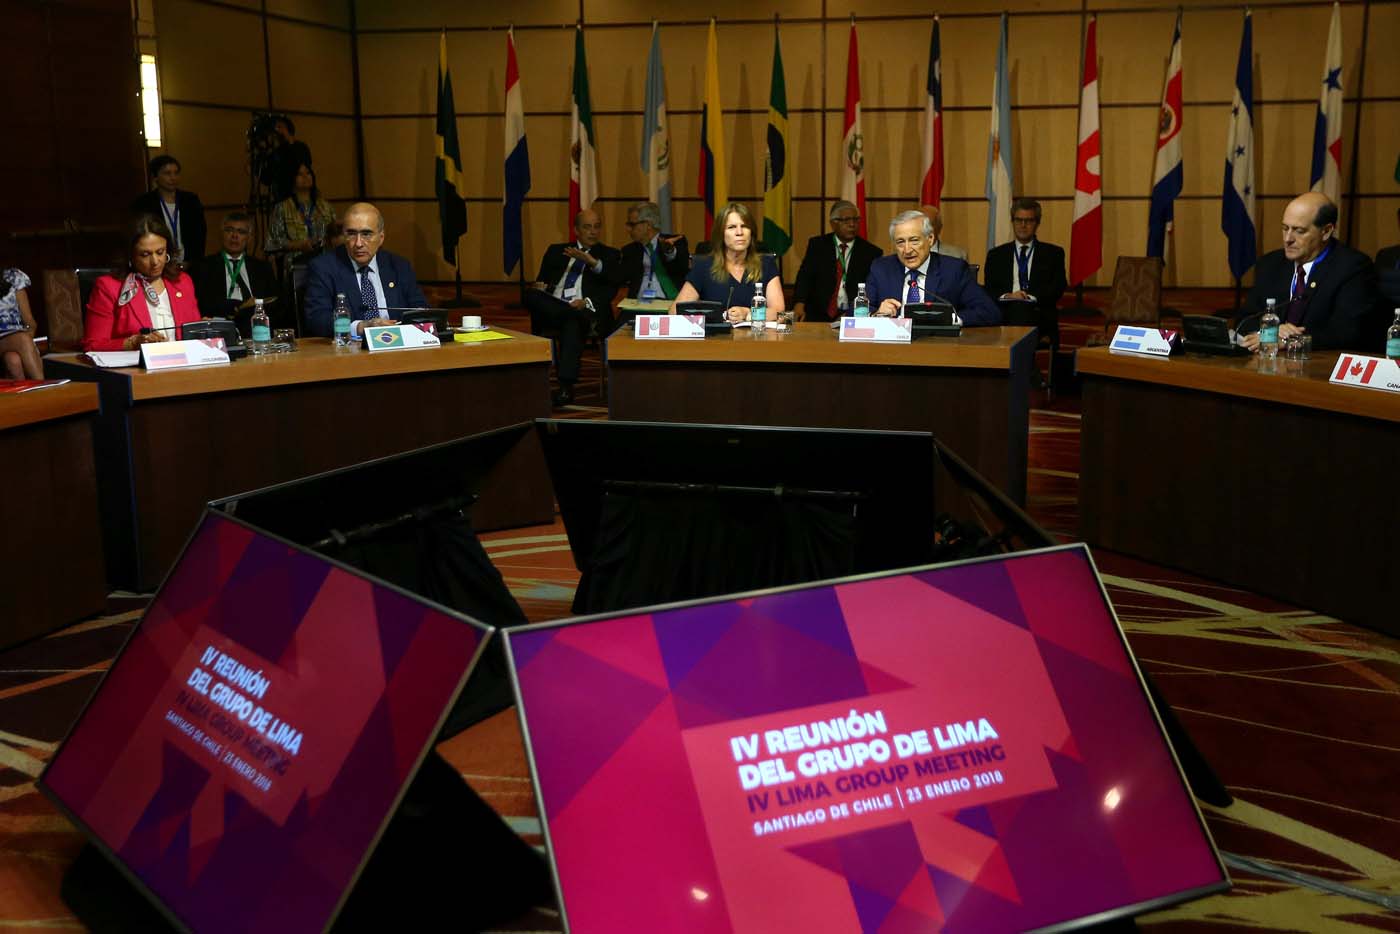 Grupo de Lima buscará pasos adicionales para lograr la democracia en Venezuela